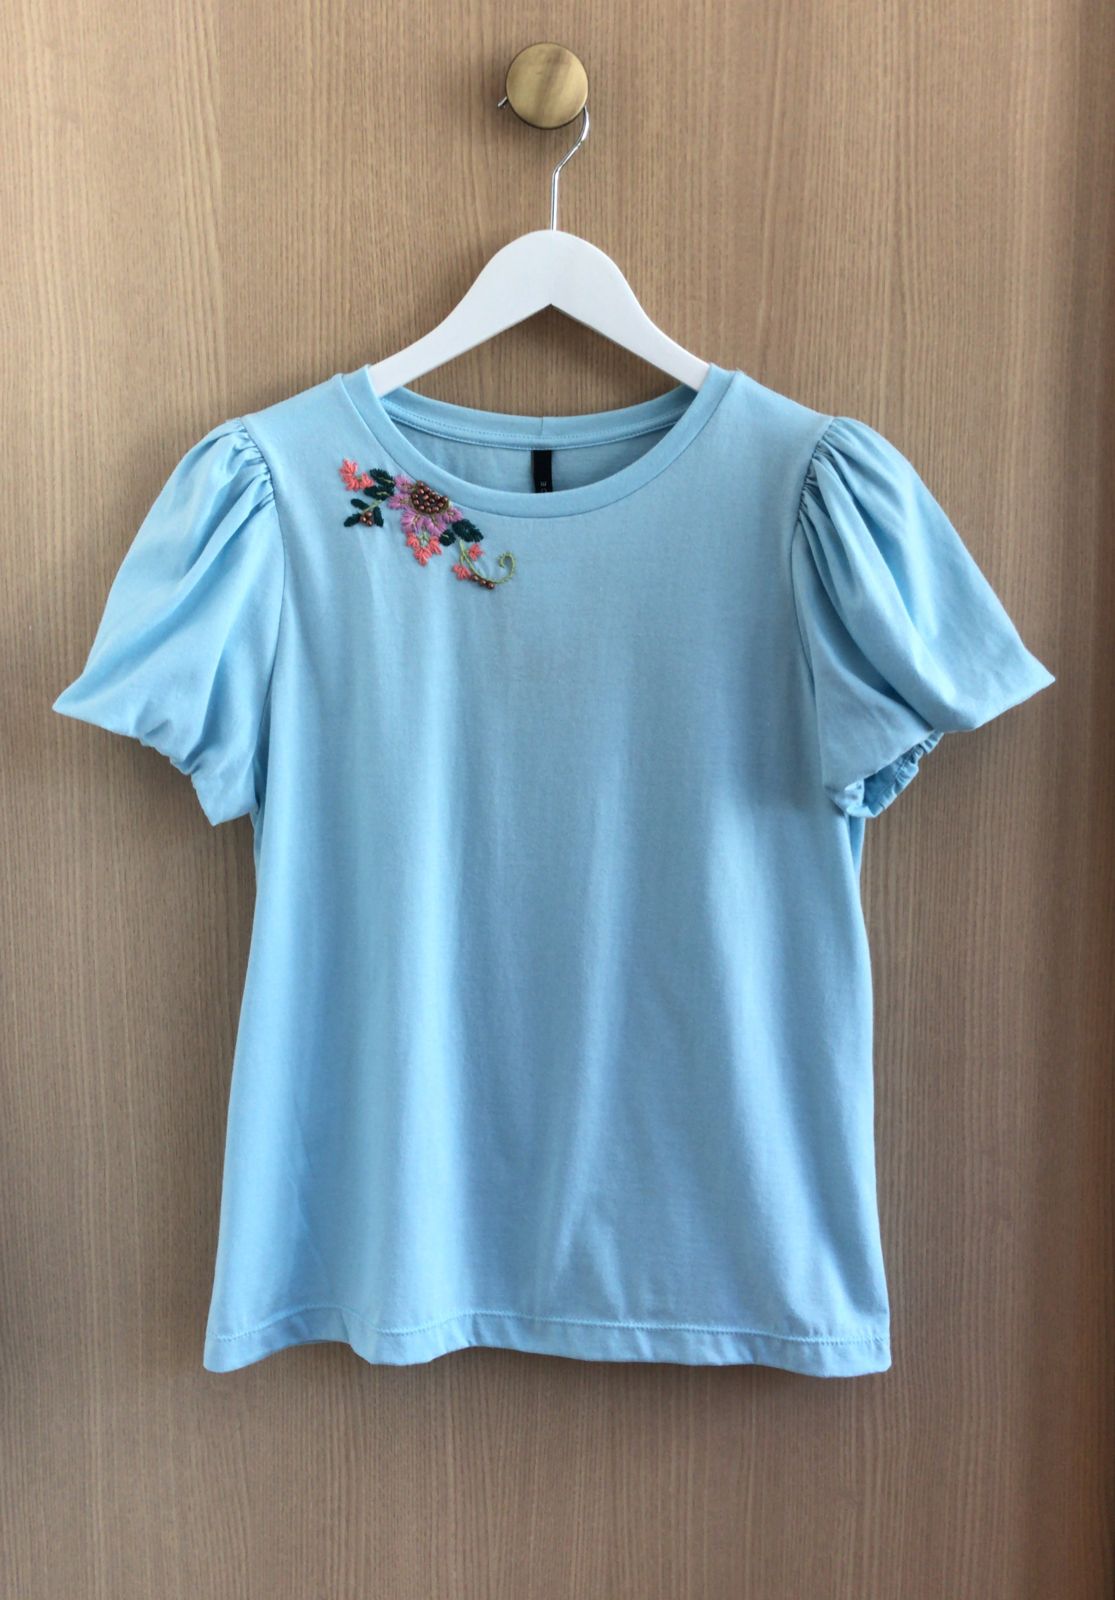 T-Shirt Alice Detalhe Bordado Floral Manga Bufante 100% Algodão